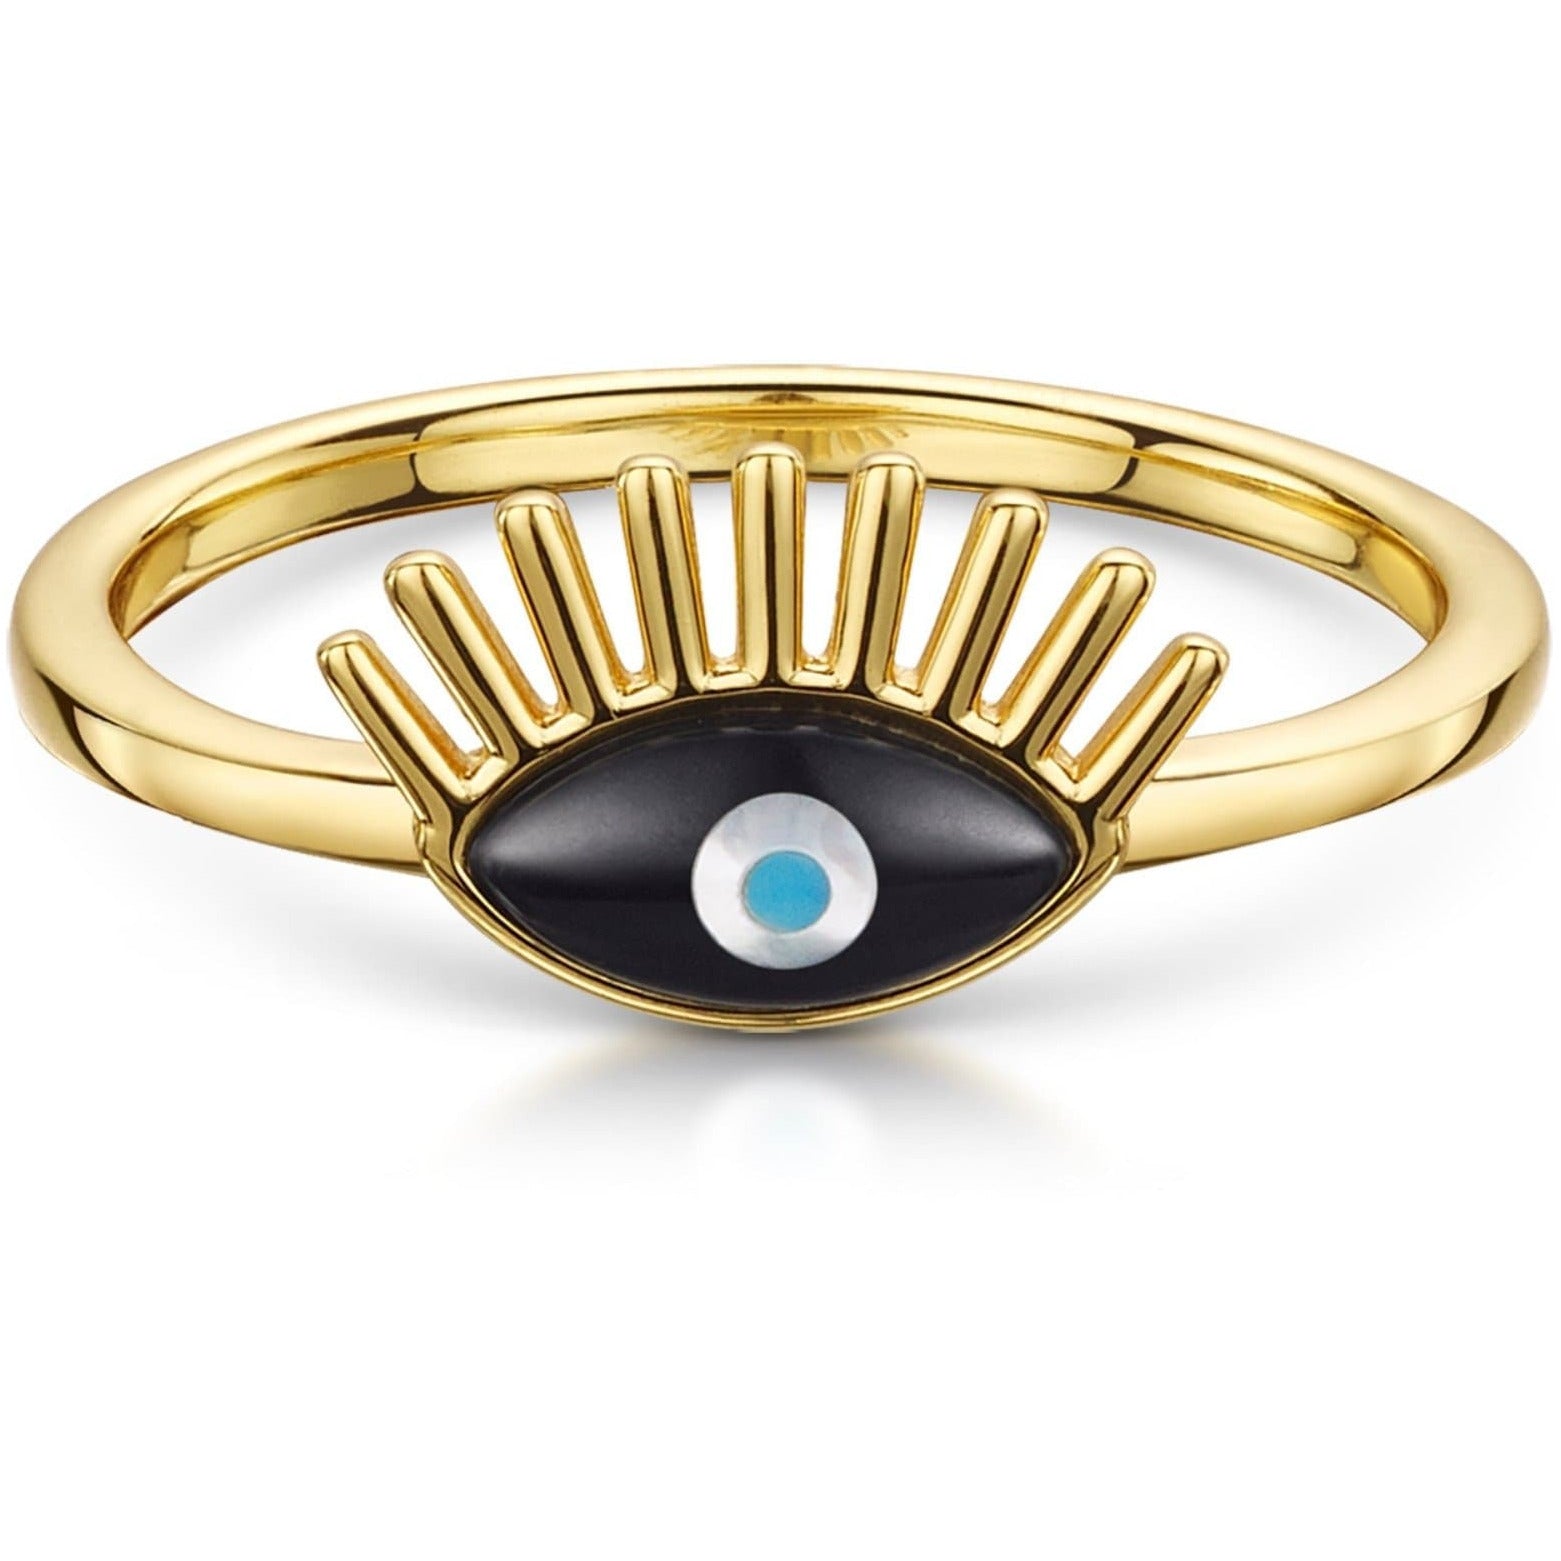 Fervor Montreal Rings Divine Eye- Lash Lucky Eye Ring